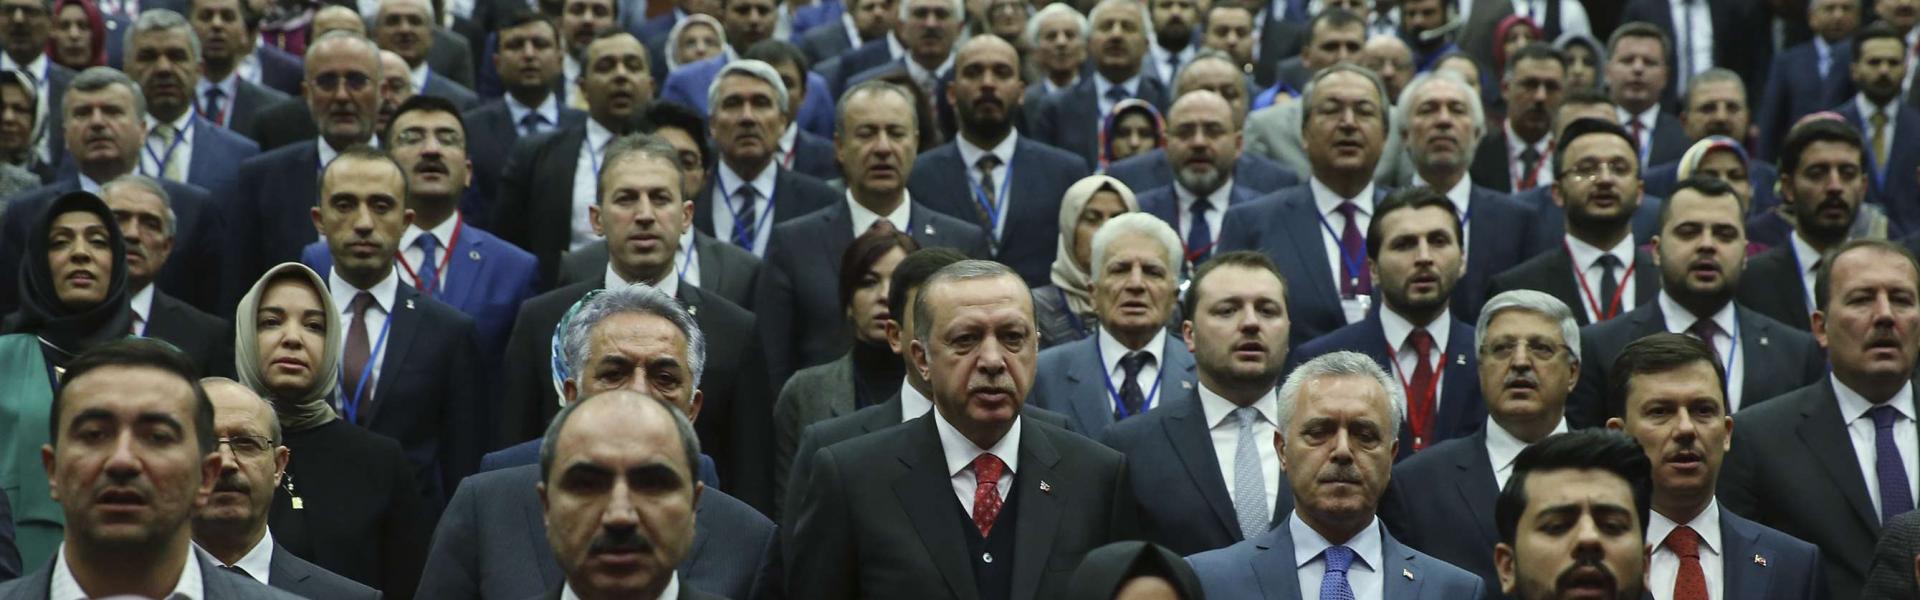 اردوغان يعلن عن قمة جديدة مع بوتين  وتفاهم تاريخي مع ترامب 